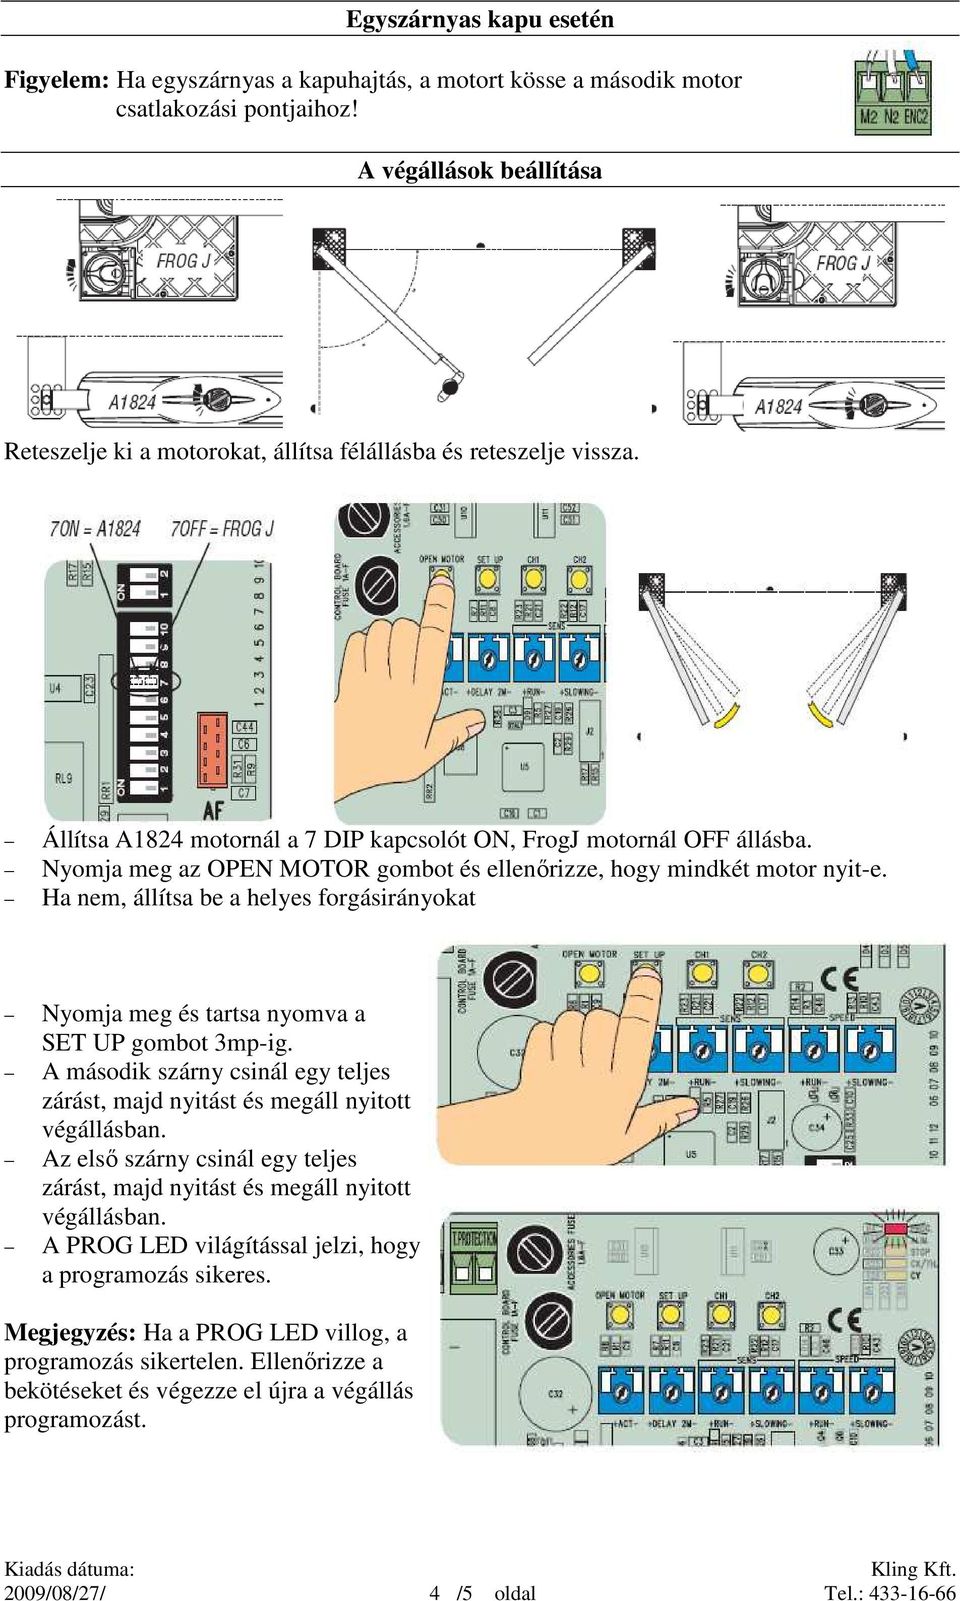 Nyomja meg az OPEN MOTOR gombot és ellenırizze, hogy mindkét motor nyit-e. Ha nem, állítsa be a helyes forgásirányokat Nyomja meg és tartsa nyomva a SET UP gombot 3mp-ig.